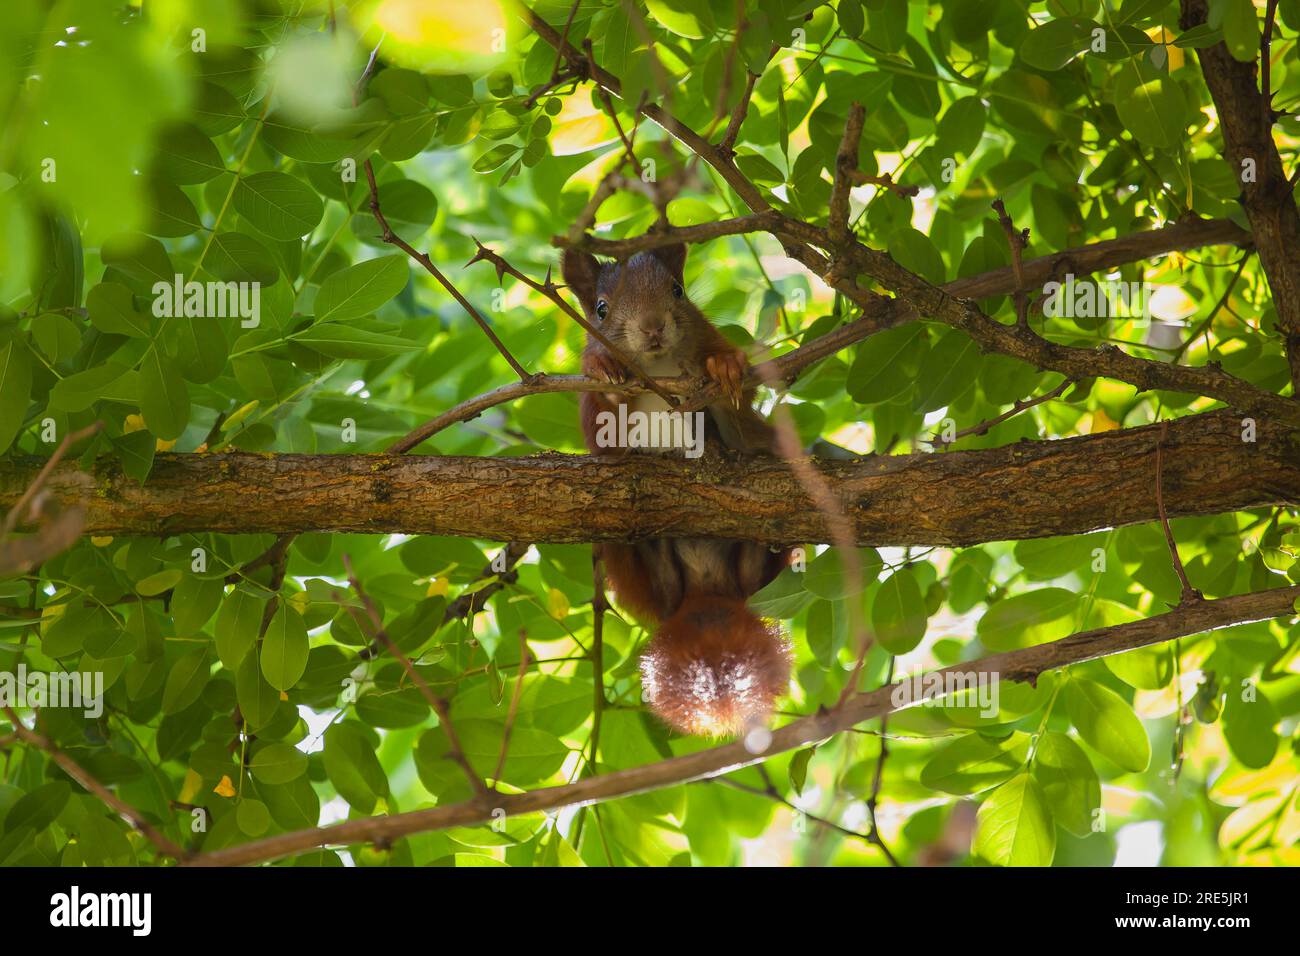 Eichhörnchen auf einem AST sitzend Foto Stock